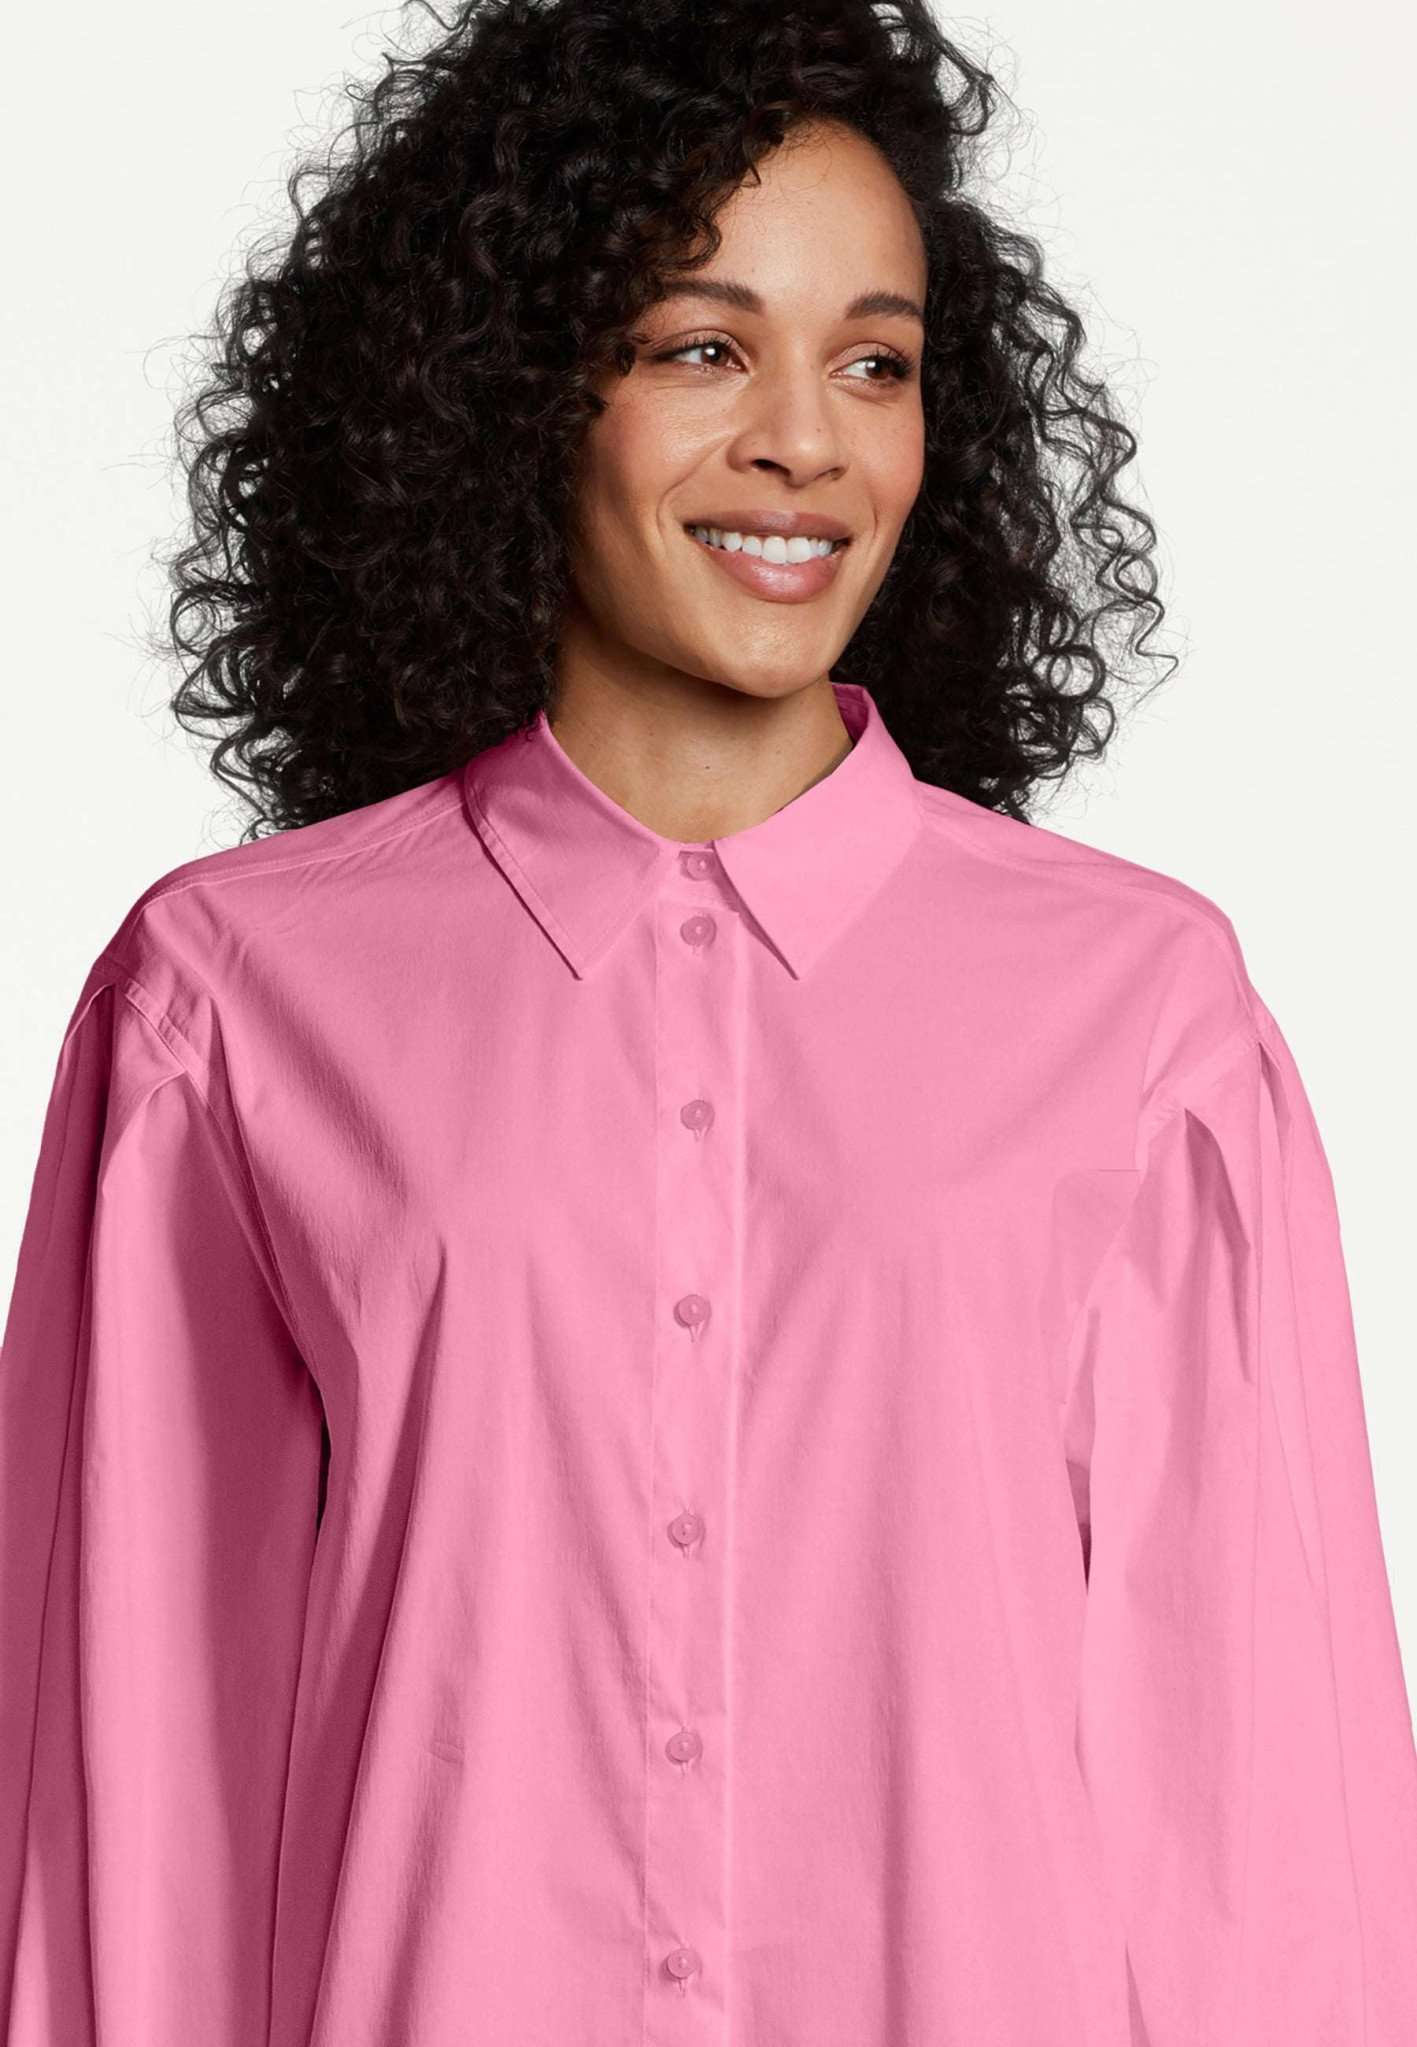 Arkadia Oversized Blouse in Pink Carnation Hemden Tamaris   